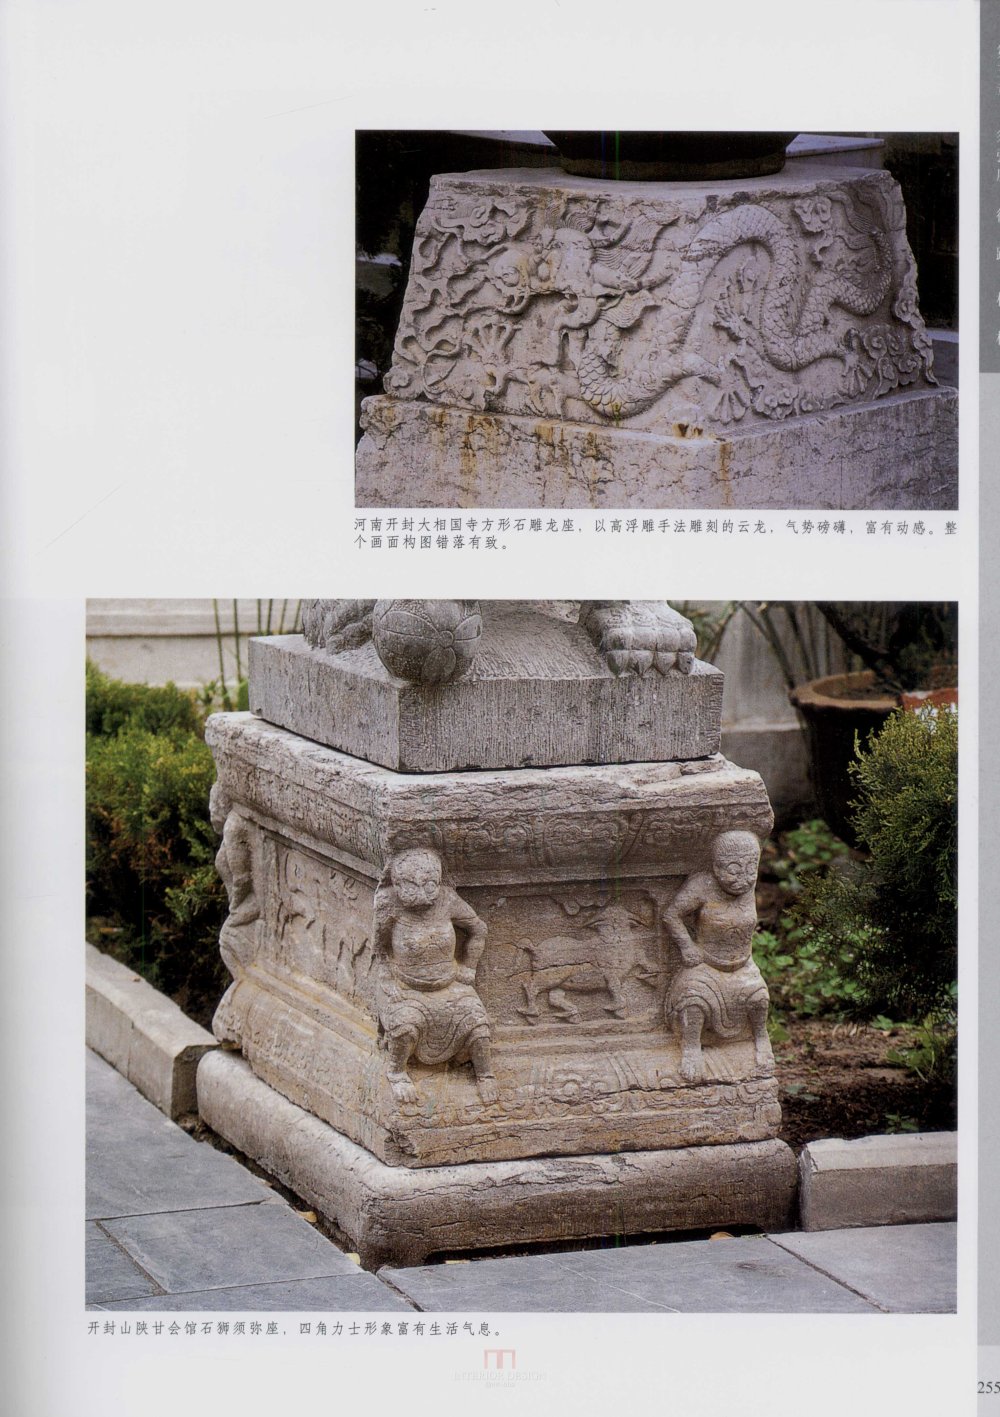 中国古代建筑 石雕_kobe 0262.jpg